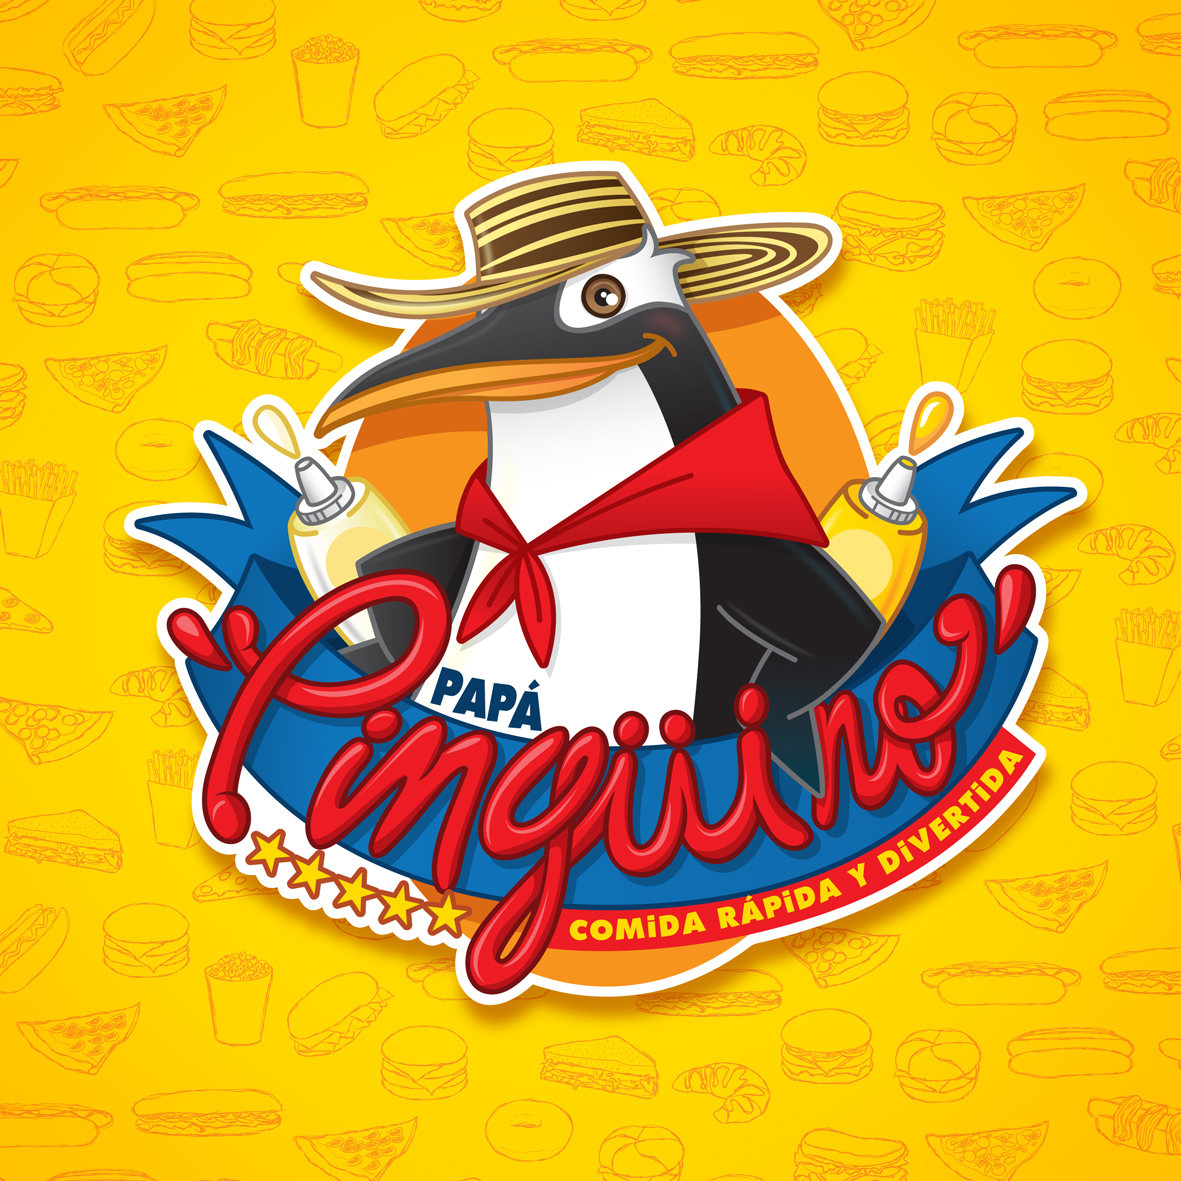 pinguino papa barranquilla Fast food comida rápida penguin design art ILLUSTRATION  vector